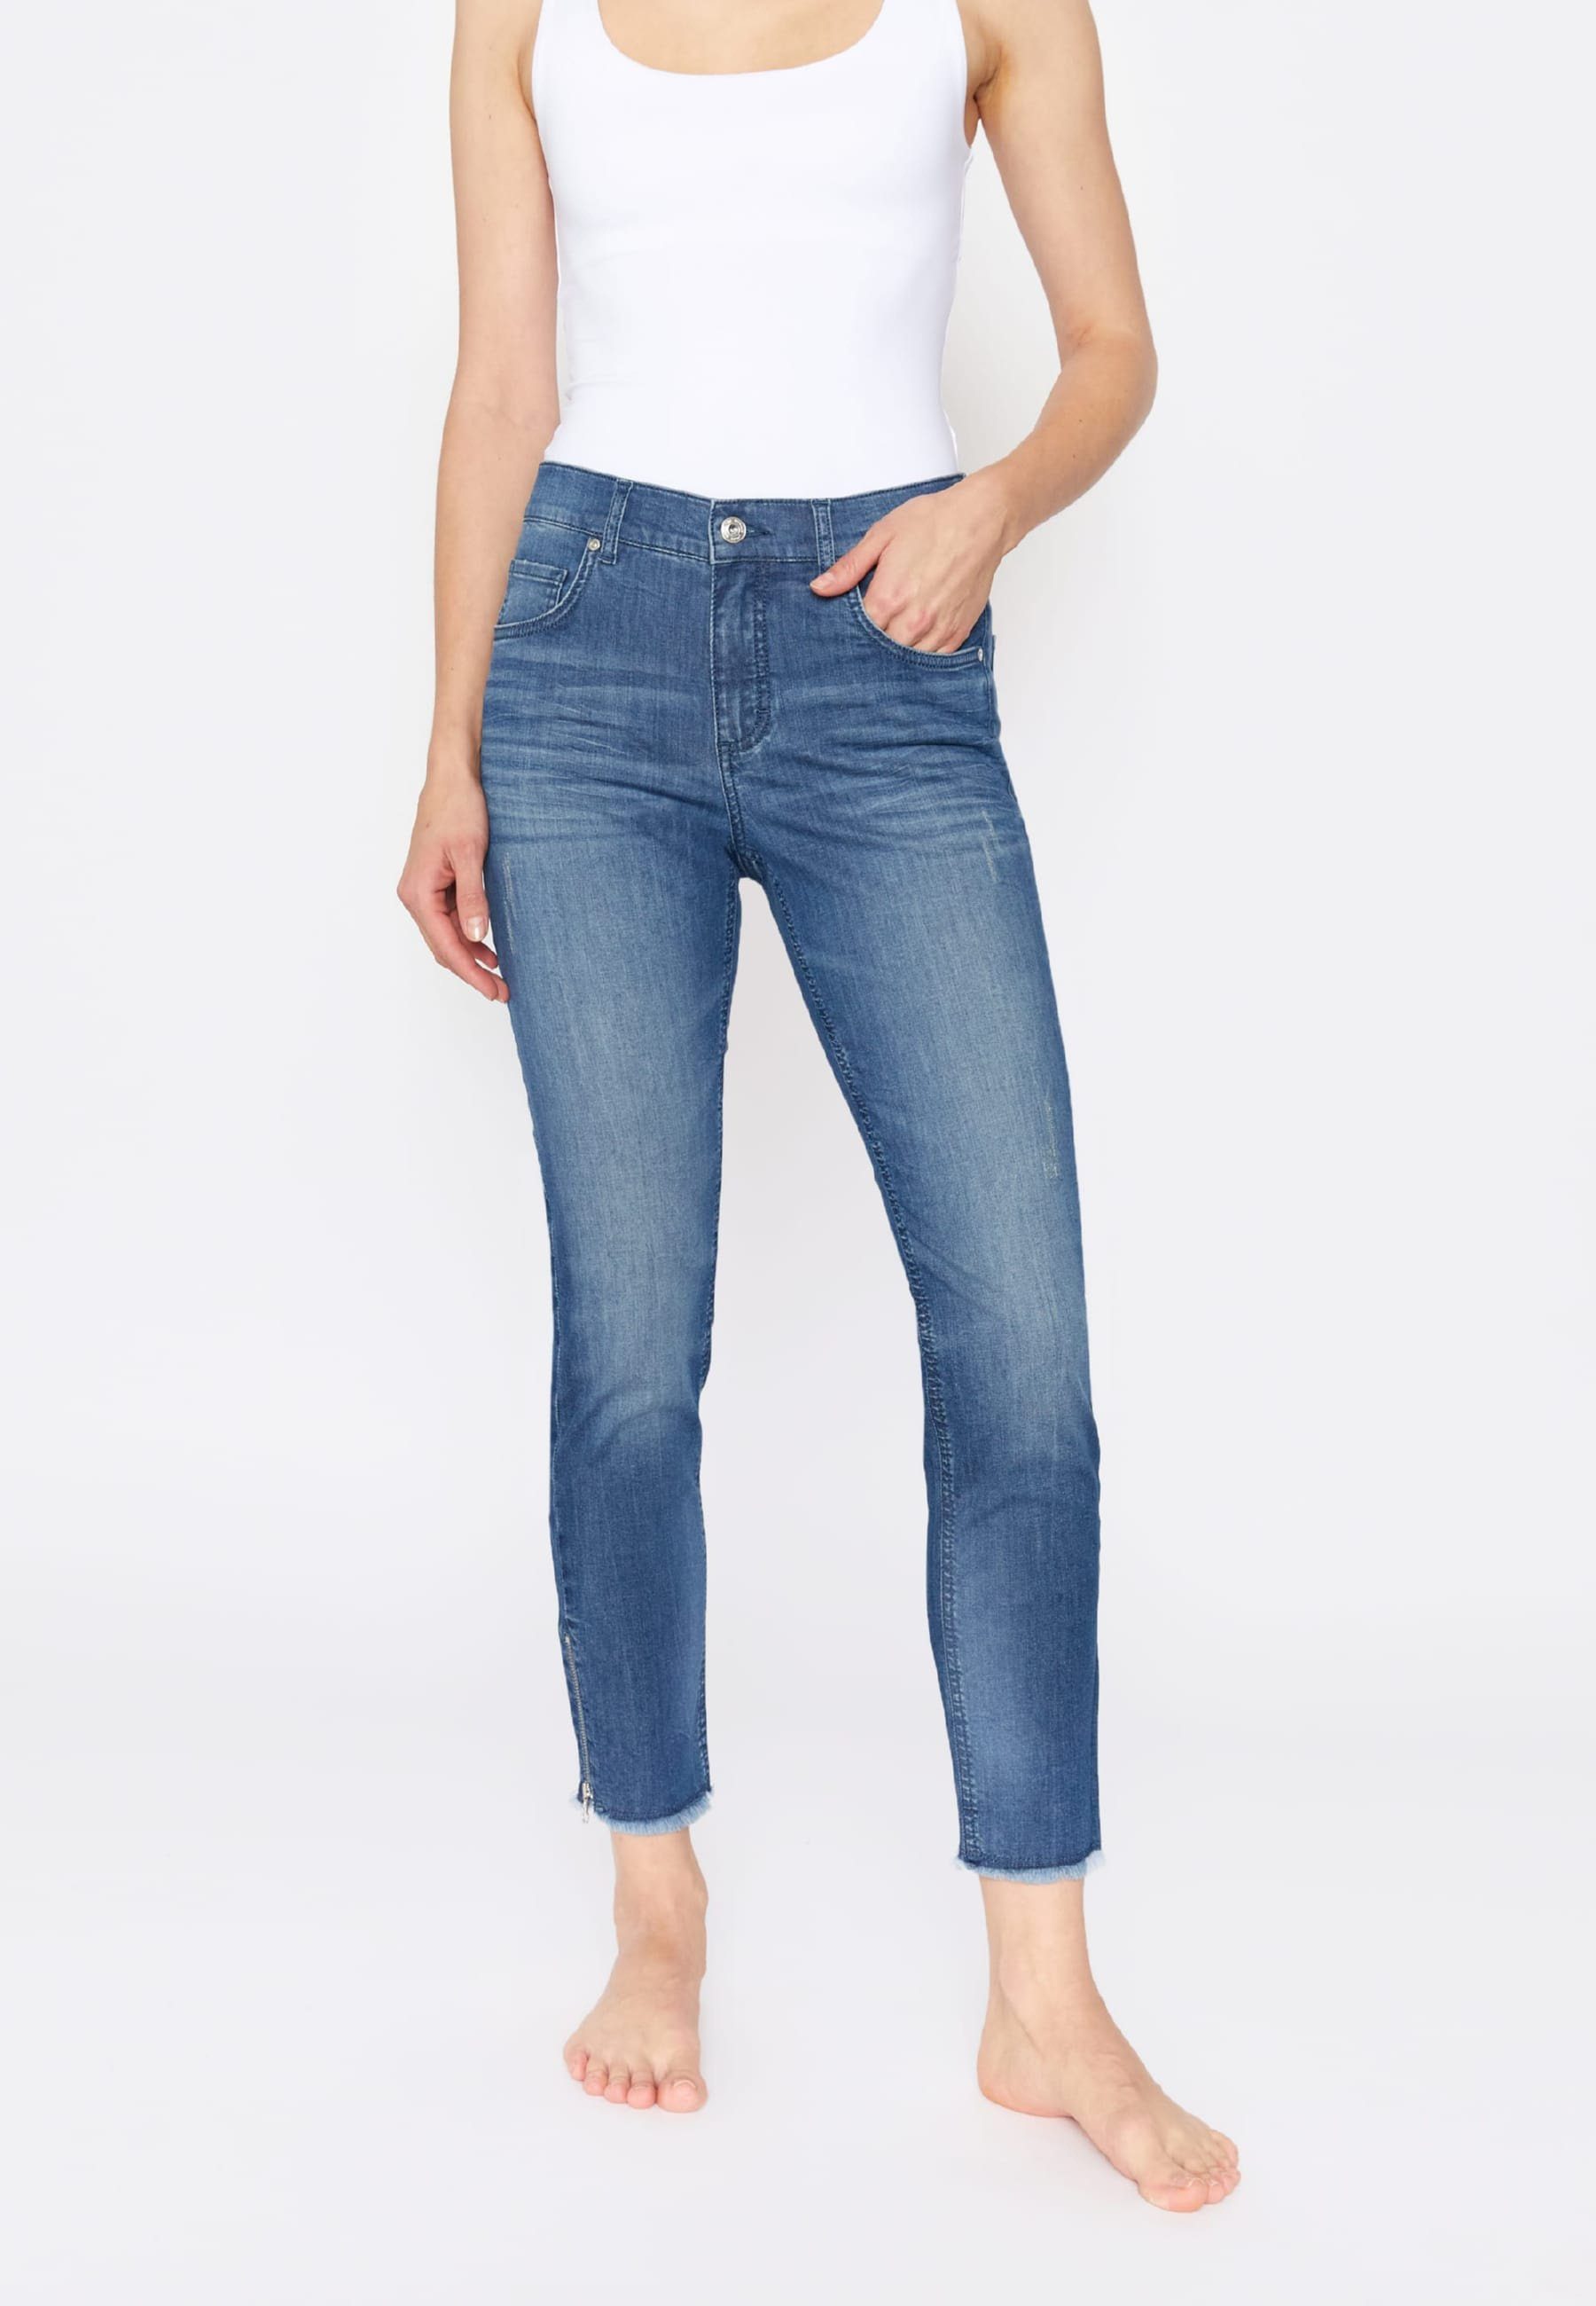 ANGELS Slim-fit-Jeans Slim-Jeans Skinny Ankle Zip Fringe mit Label-Applikationen dunkelblau